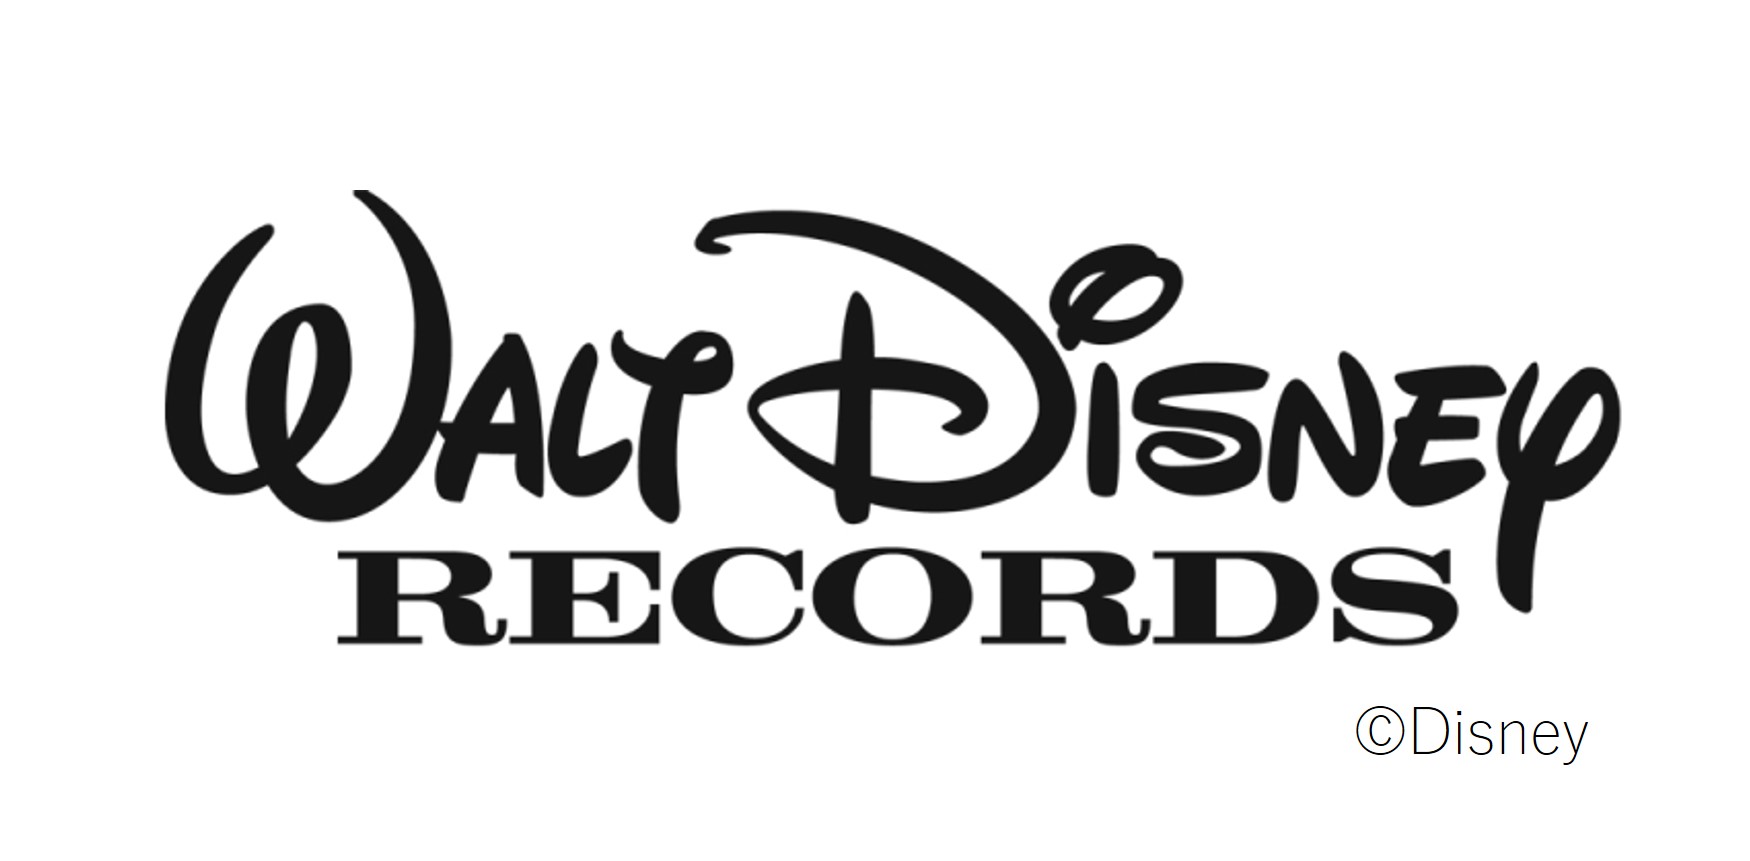 ユニバーサル ミュージック ウォルト ディズニー レコーズの日本国内における独占ライセンス契約を締結